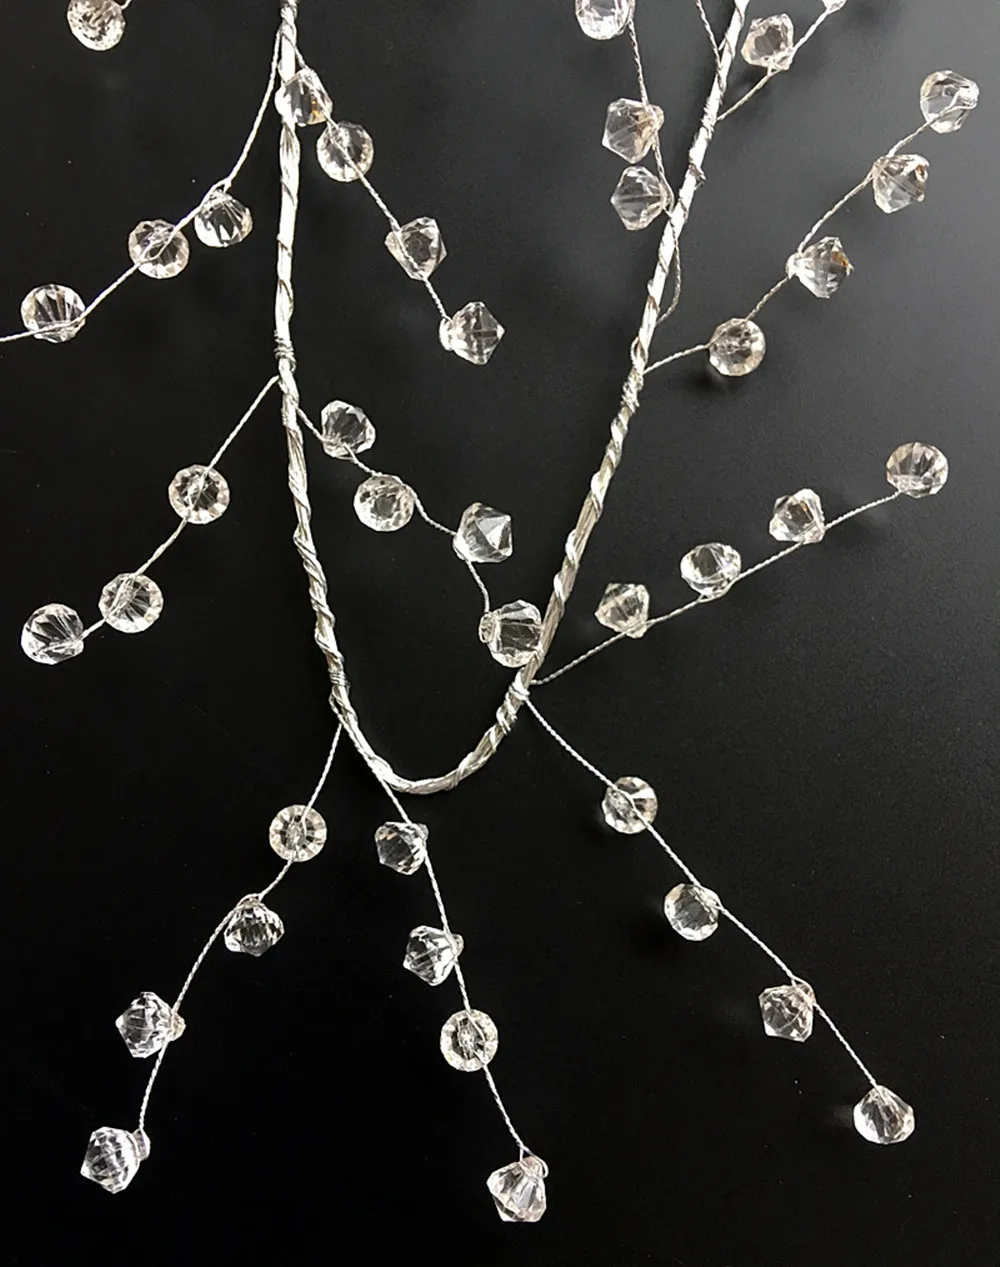 1m Garland Yarn Acrylic Crystal 14mm Beads Curtain Wedding Party zonwl F @net